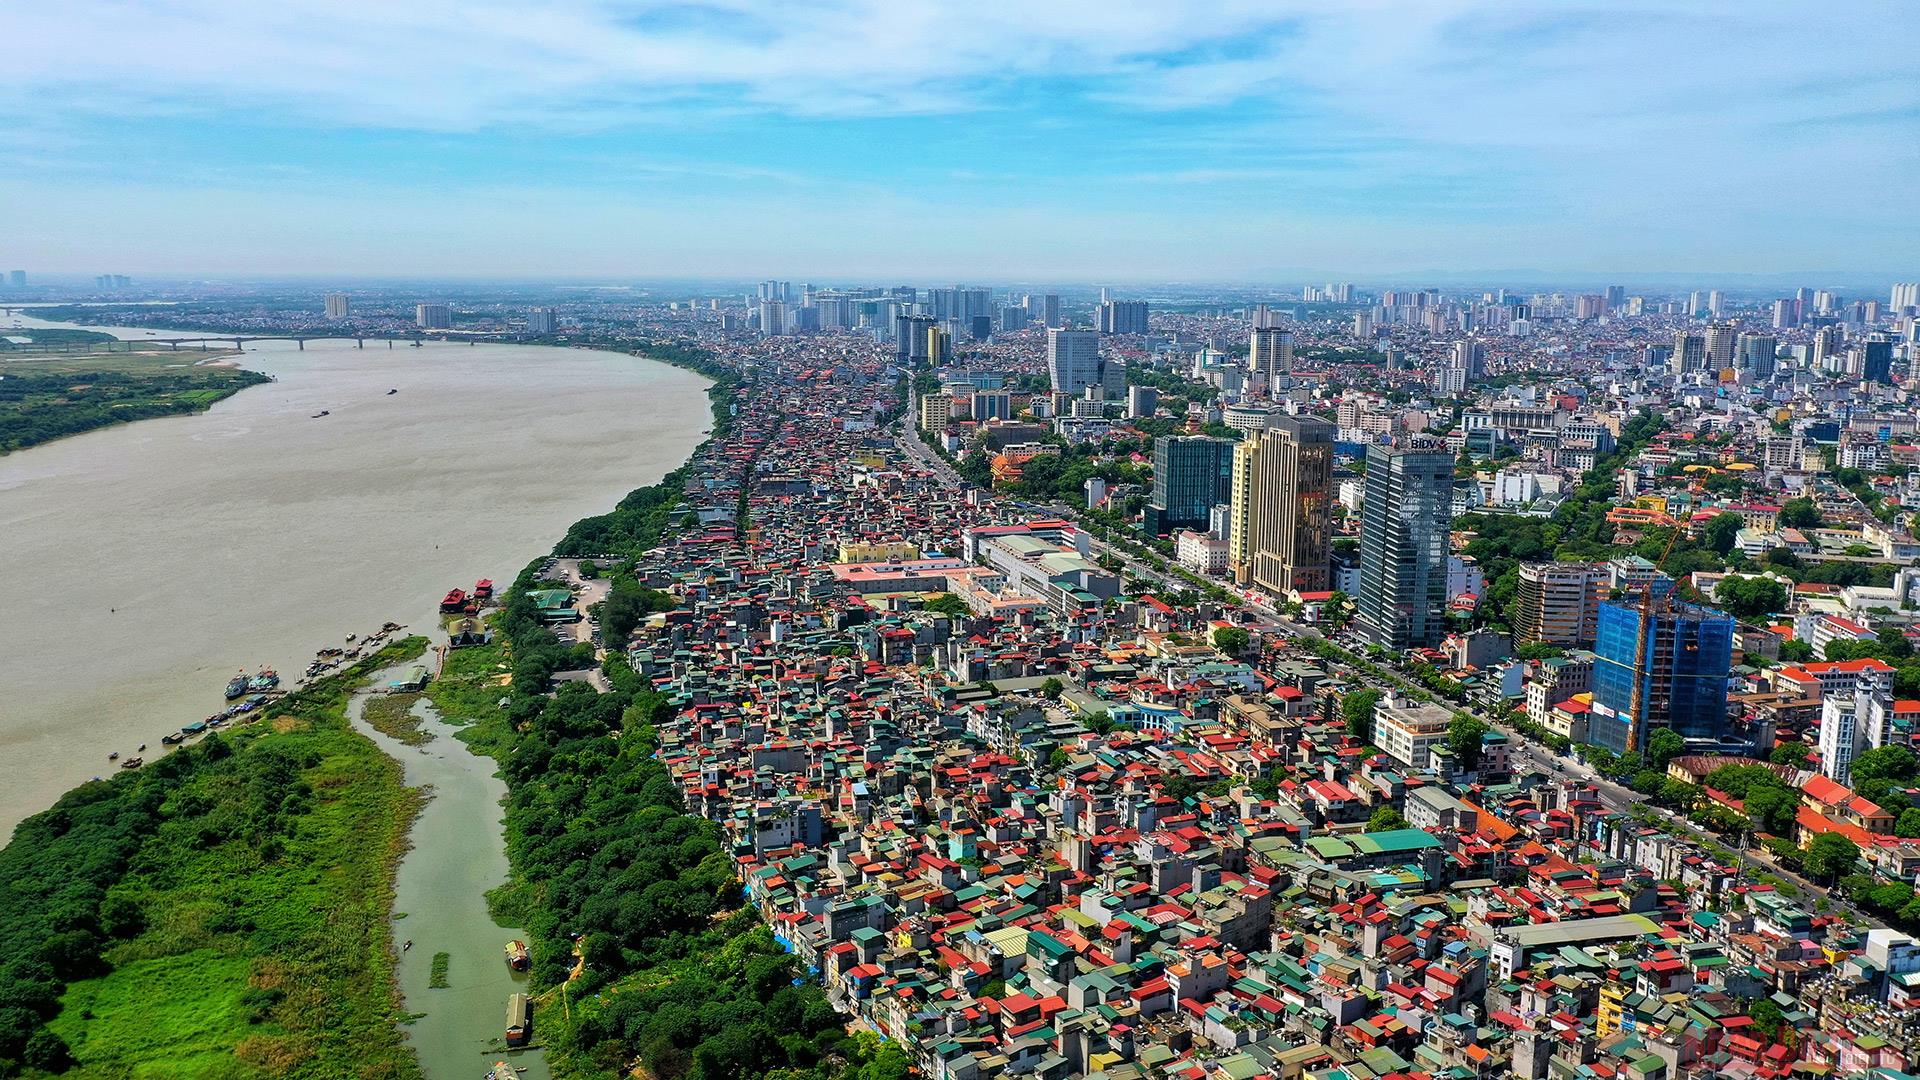 Quy hoạch Thủ đô Hà Nội thời kỳ 2021 - 2030, tầm nhìn đến năm 2050 cần đảm bảo tính kết nối đồng bộ giữa quy hoạch quốc gia với quy hoạch vùng và quy hoạch Thủ đô.